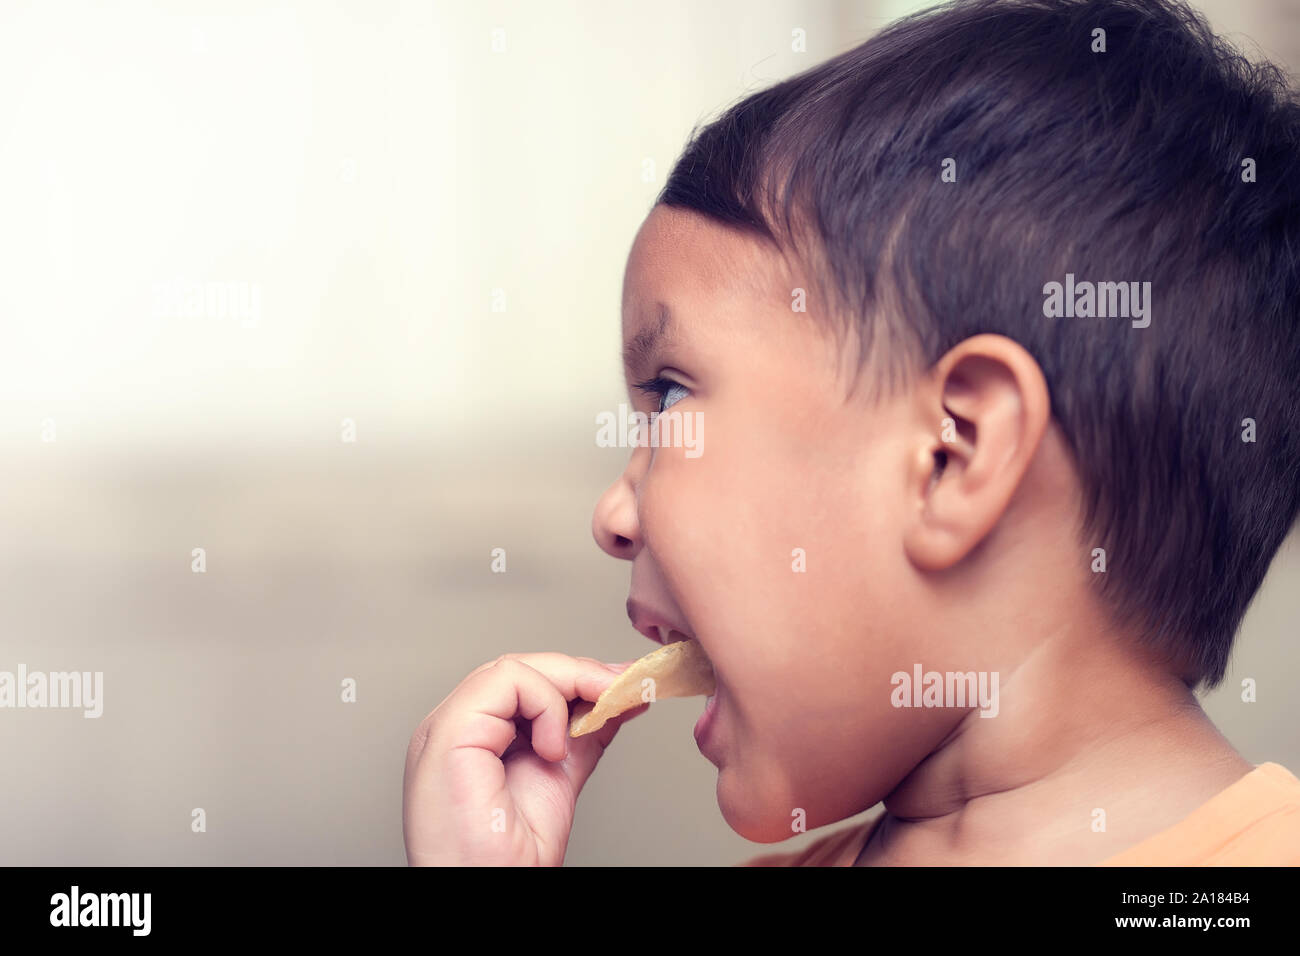 Un capretto forzatamente mettendo una malsana chip di patate snack nella sua bocca per mangiare mentre i genitori sono lontani. Foto Stock